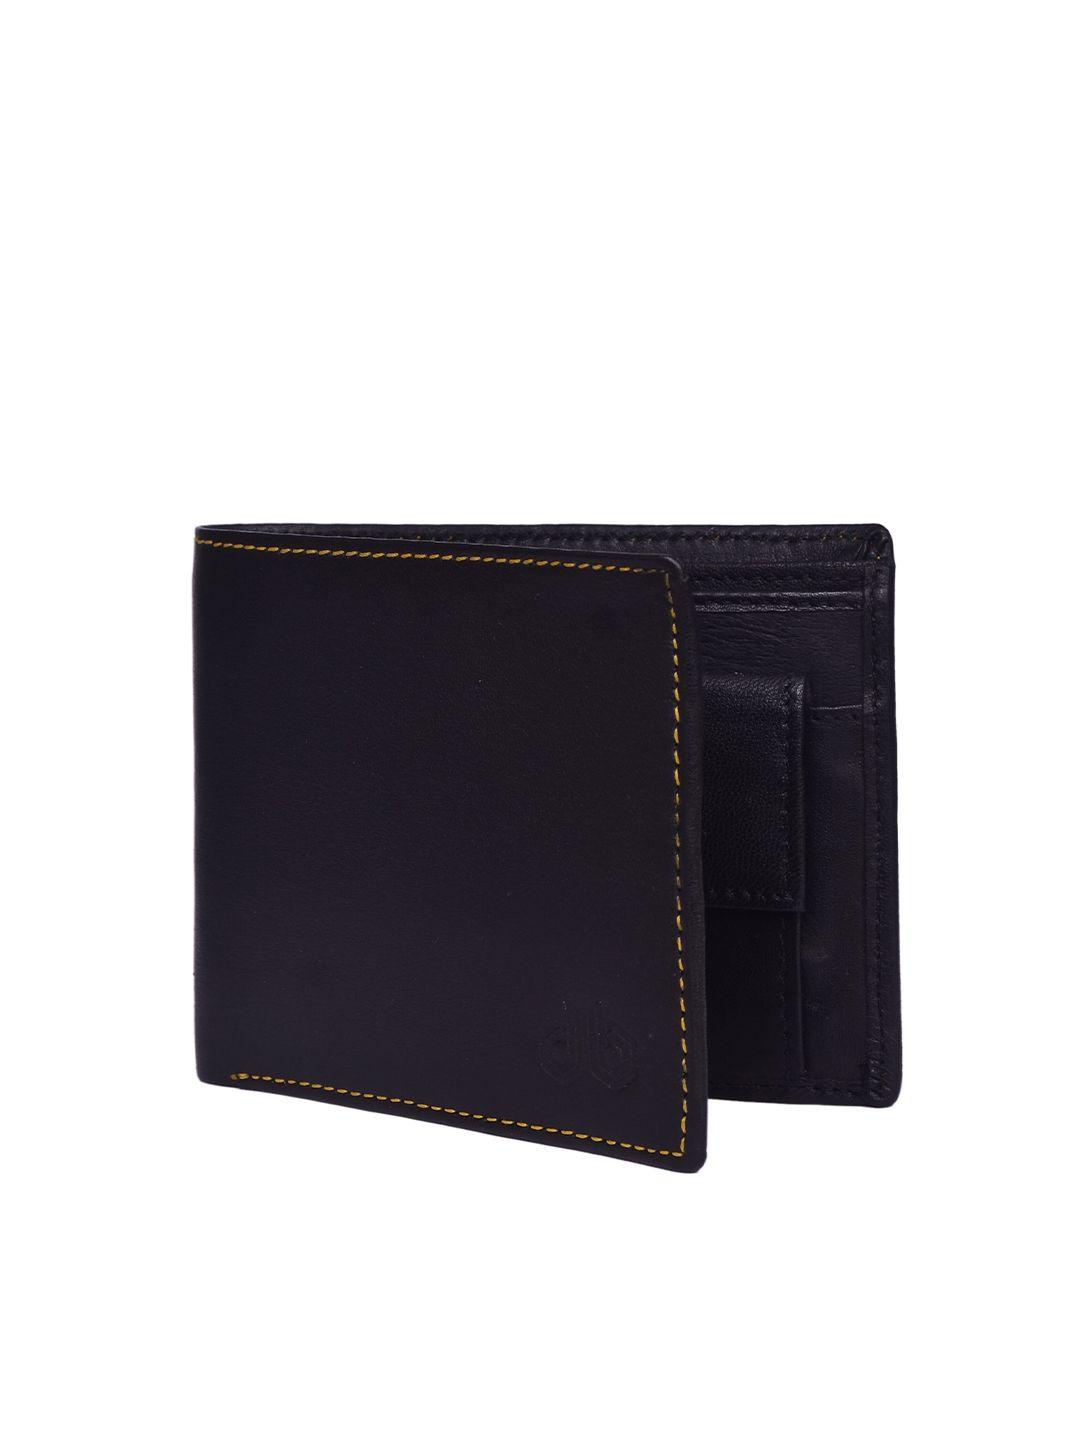 designer bugs men black leather two fold wallet